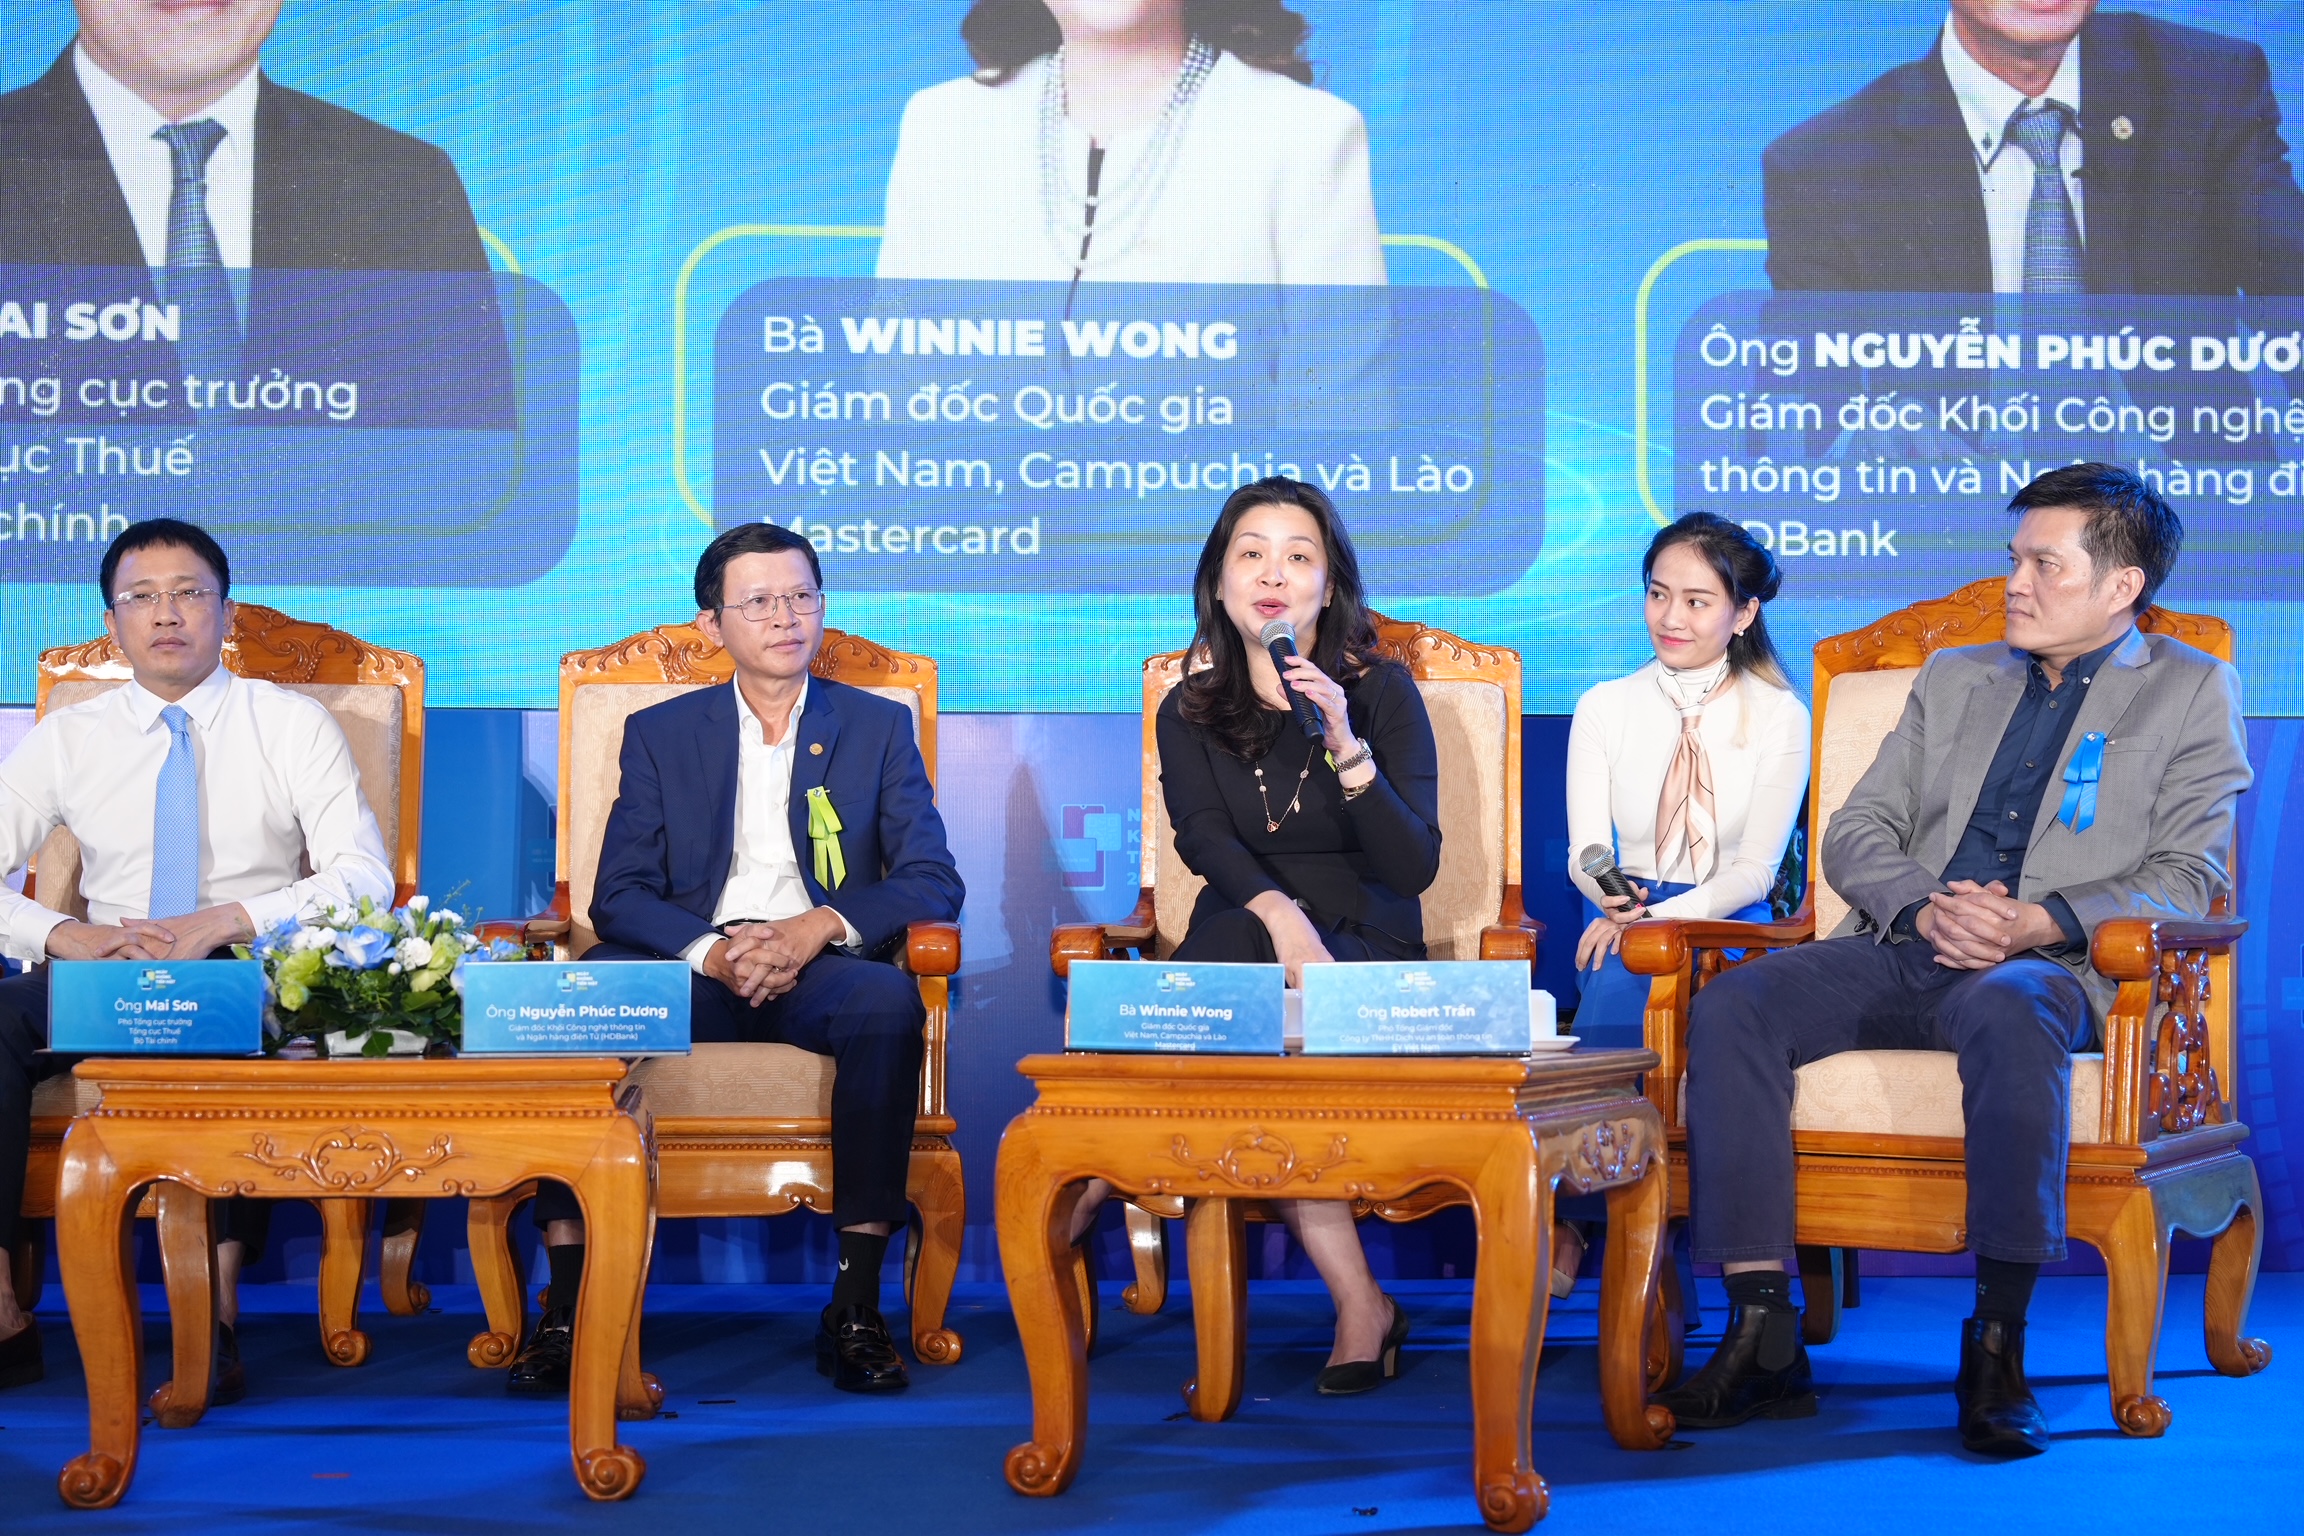 Bà Winnie Wong - Giám đốc quốc gia Việt Nam, Campuchia và Lào Mastercard chia sẻ tại hội thảo